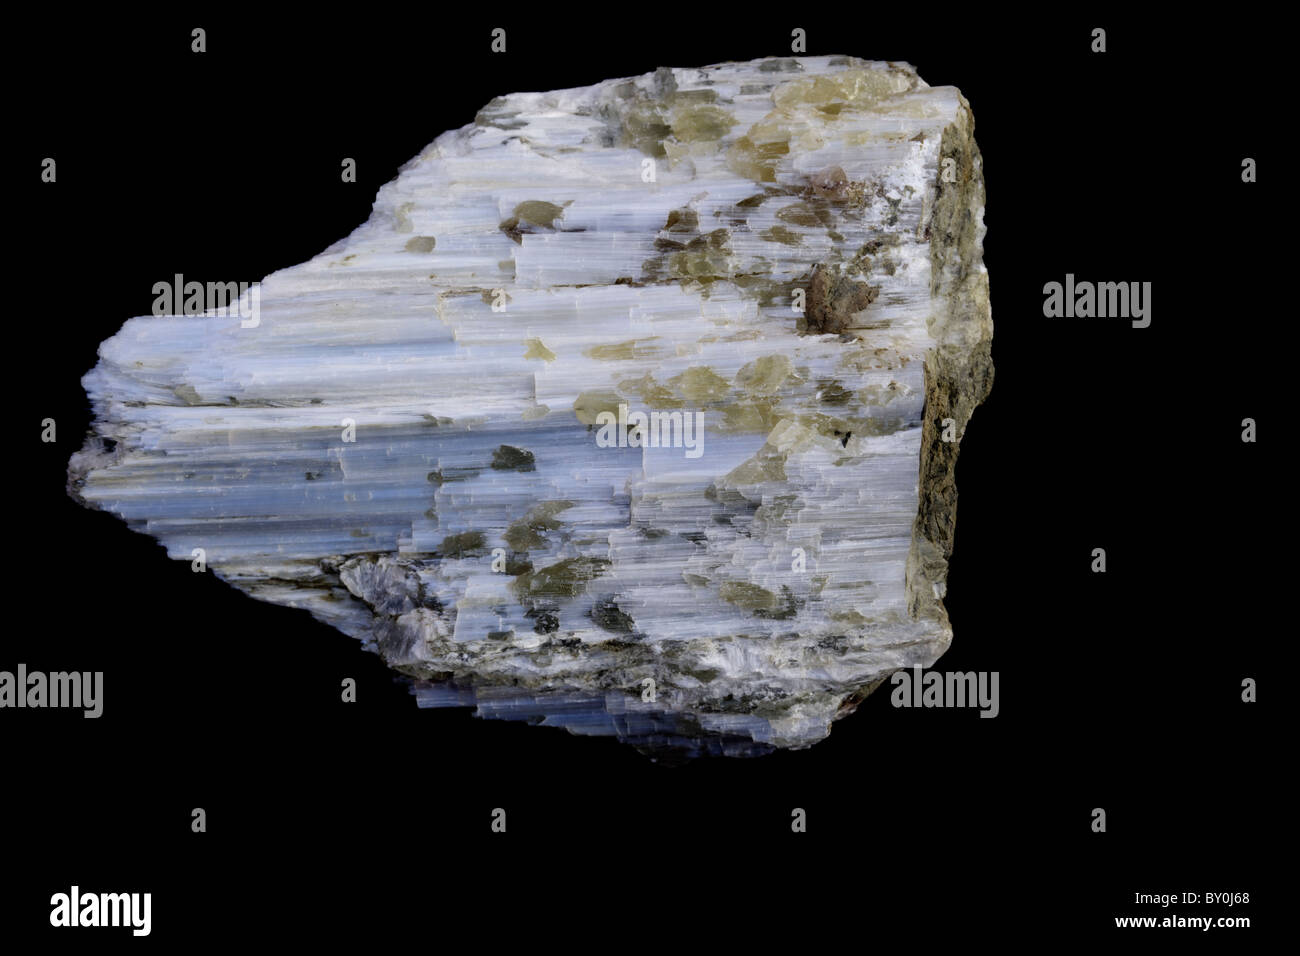 Ulexite - US Borax Bergwerk - ein Erz von Bor - Kern County Kalifornien USA - industrielle Verwendung ähnlich wie Borax einschließlich gla Stockfoto